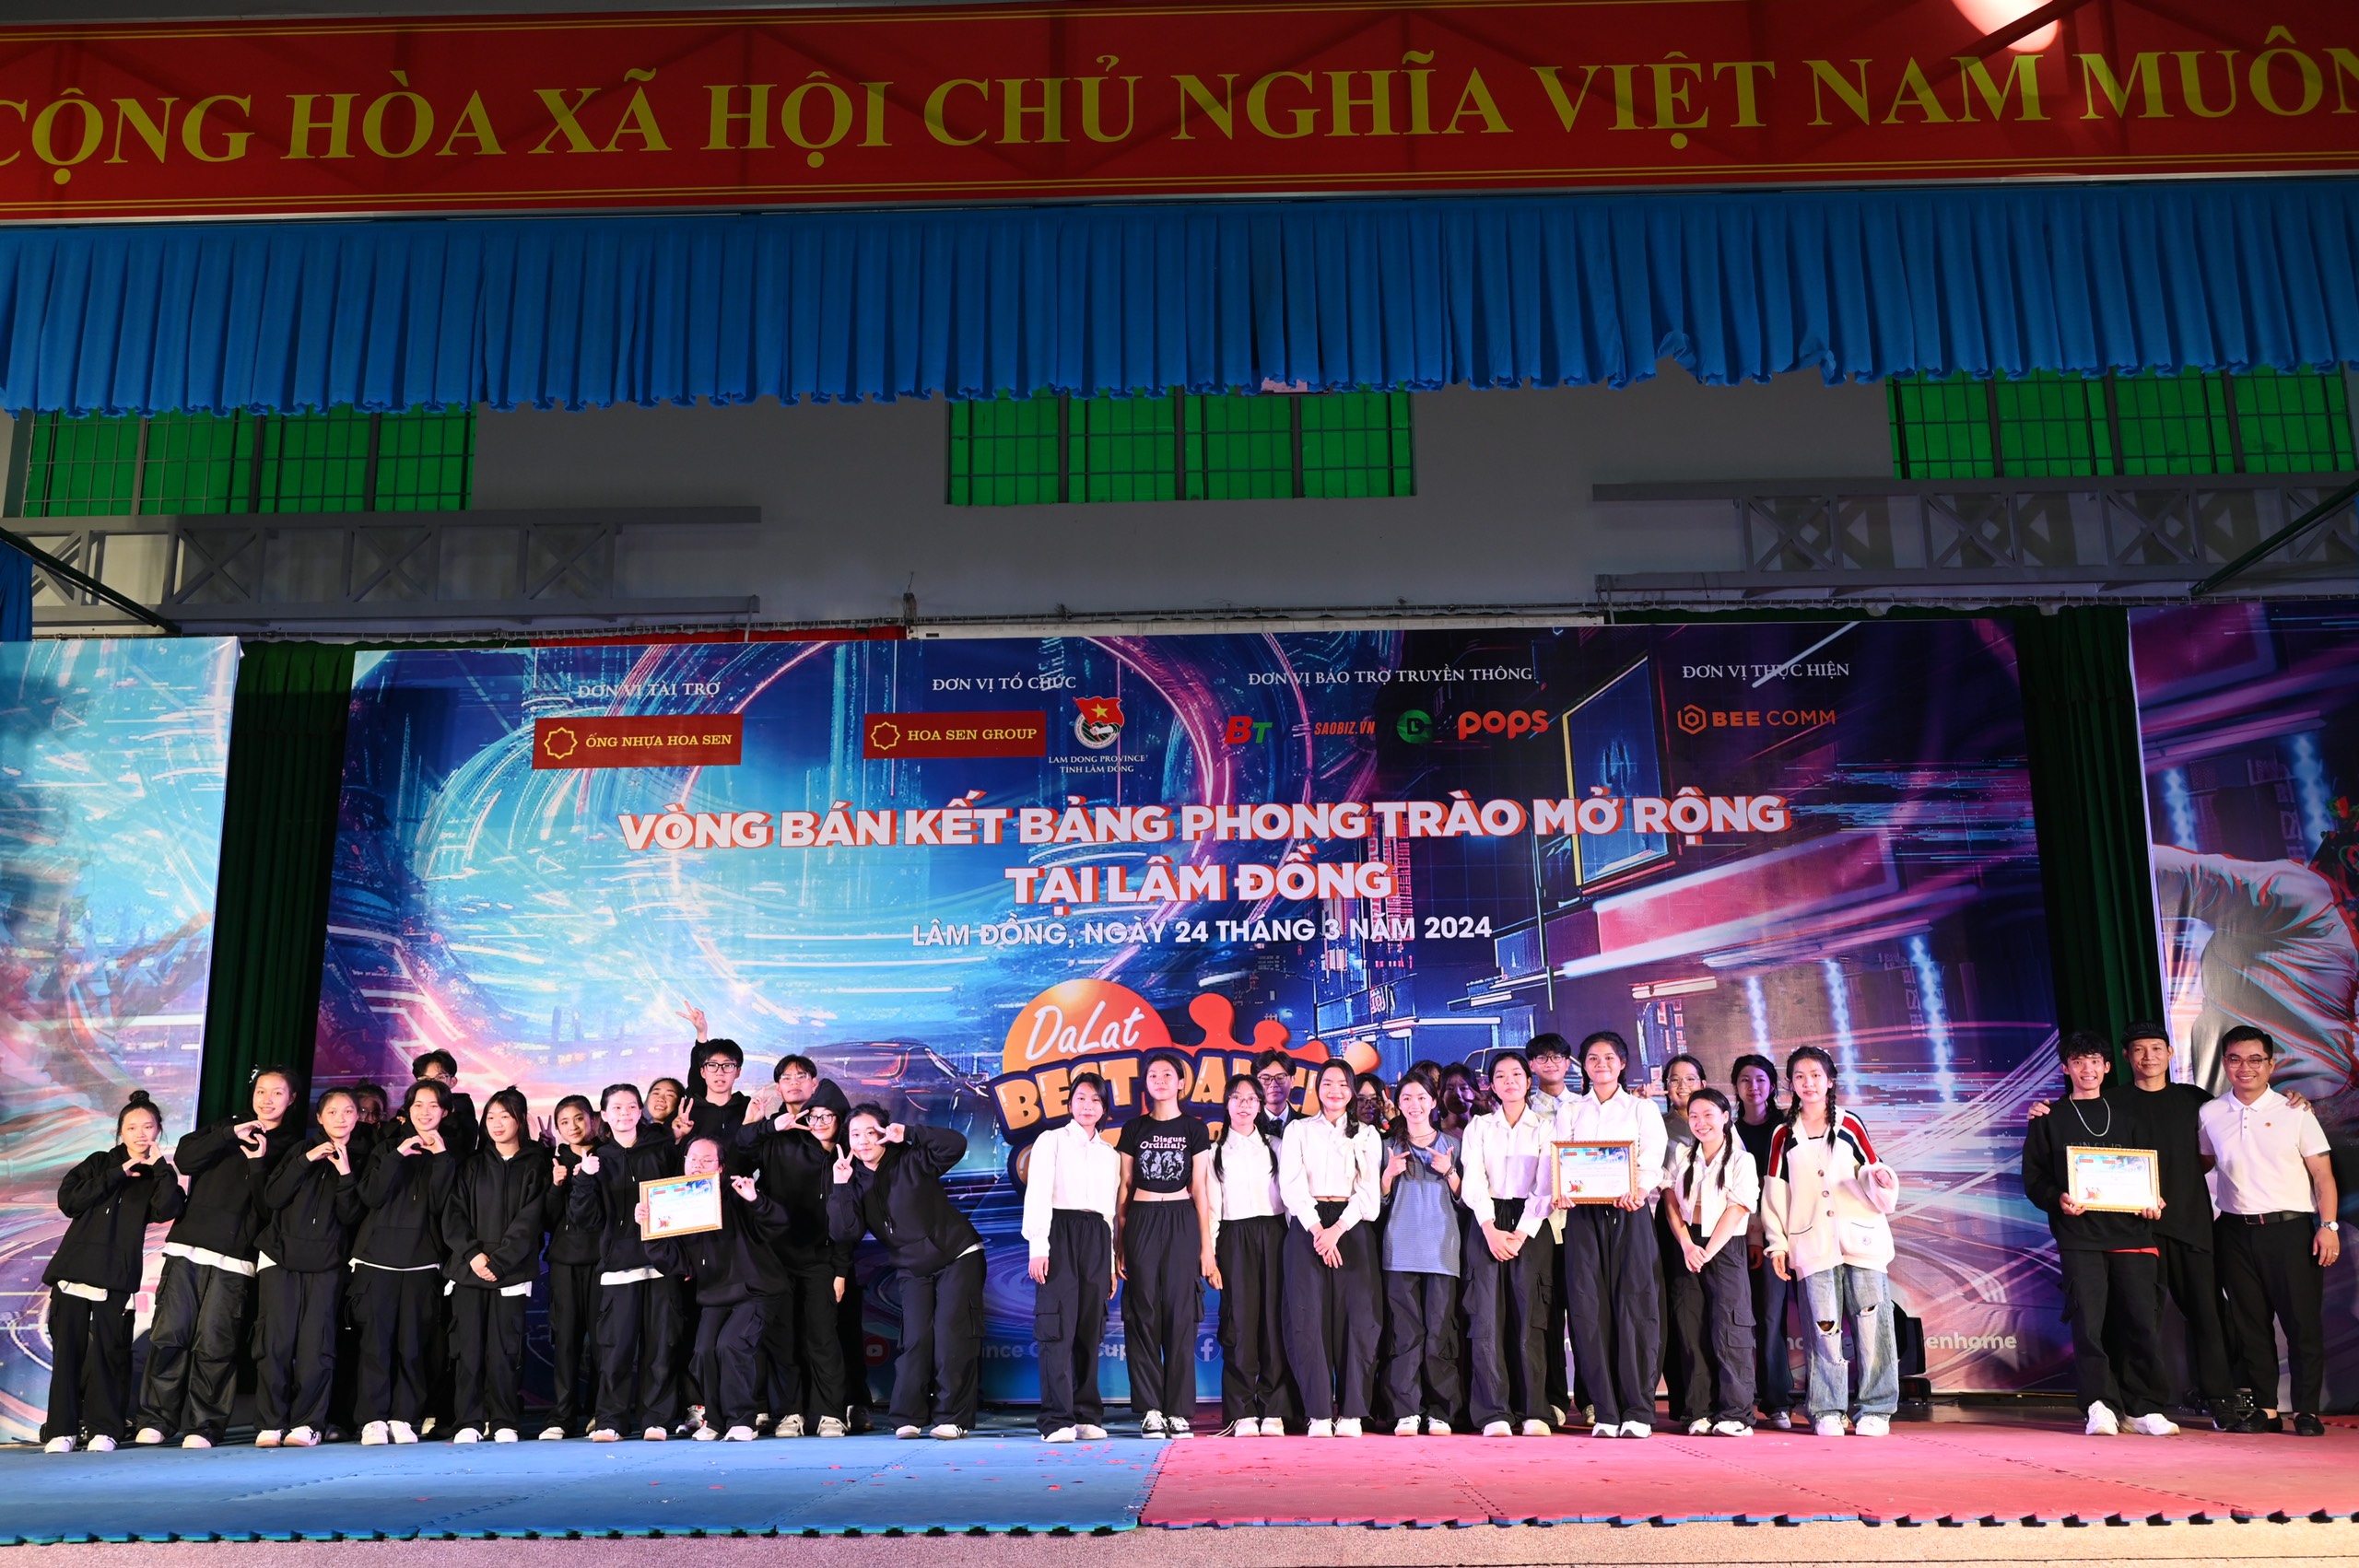 Lộ diện 14 nhóm nhảy phong trào tại Lâm Đồng lọt vào chung kết Dalat Best Dance Crew 2024 - Hoa Sen Home International Cup - 7